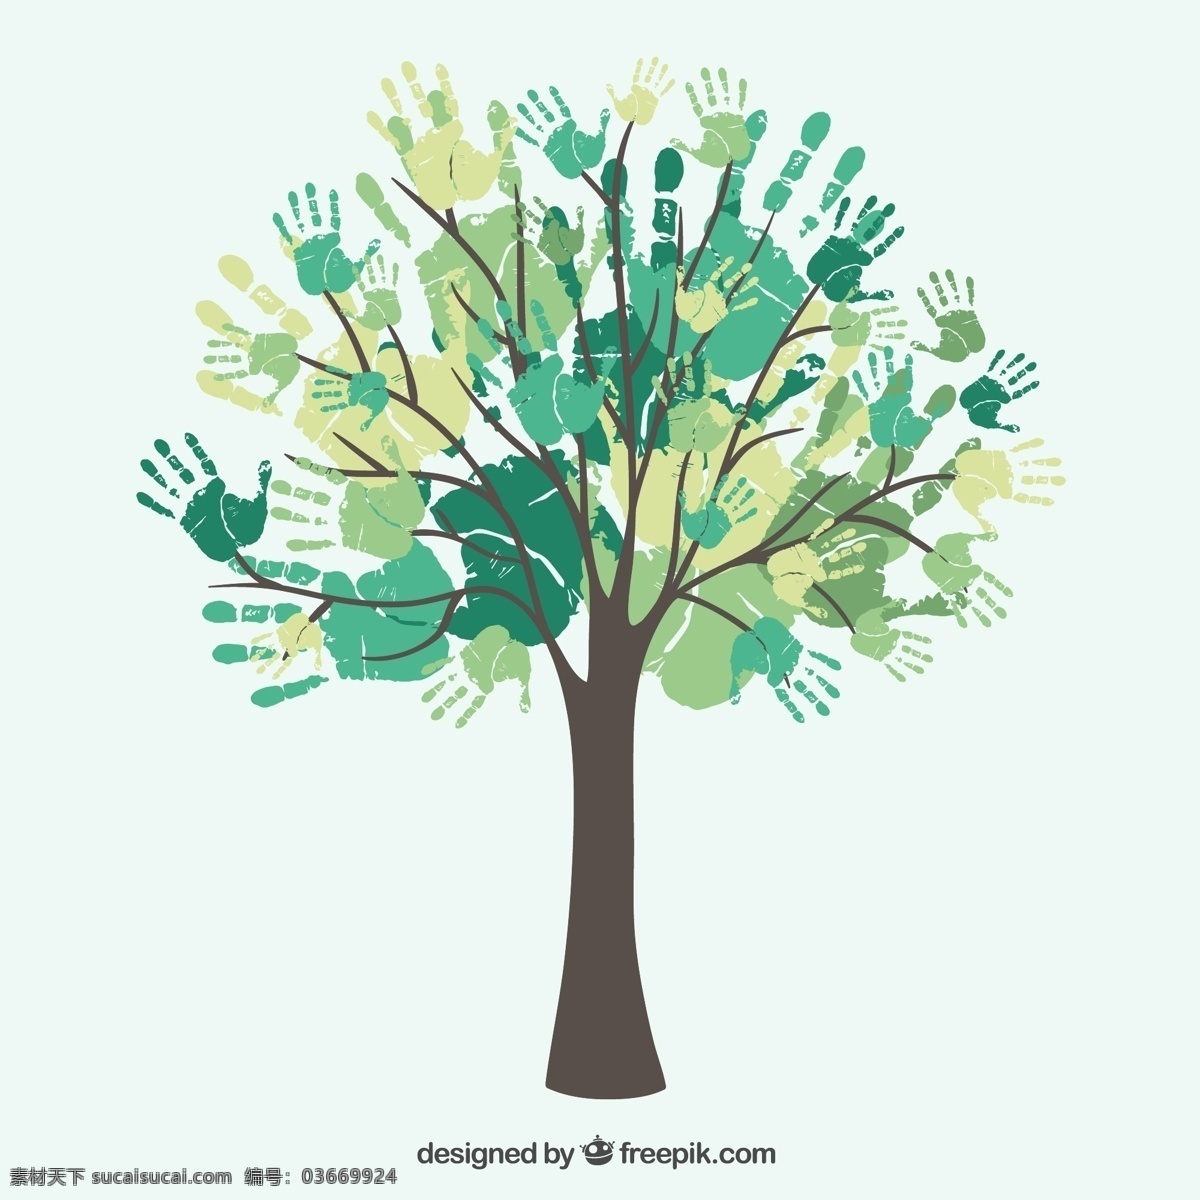 水彩手印树木 设计矢量 墨迹 水彩 手印 树木 环保 矢量图 ai格式 生物世界 树木树叶